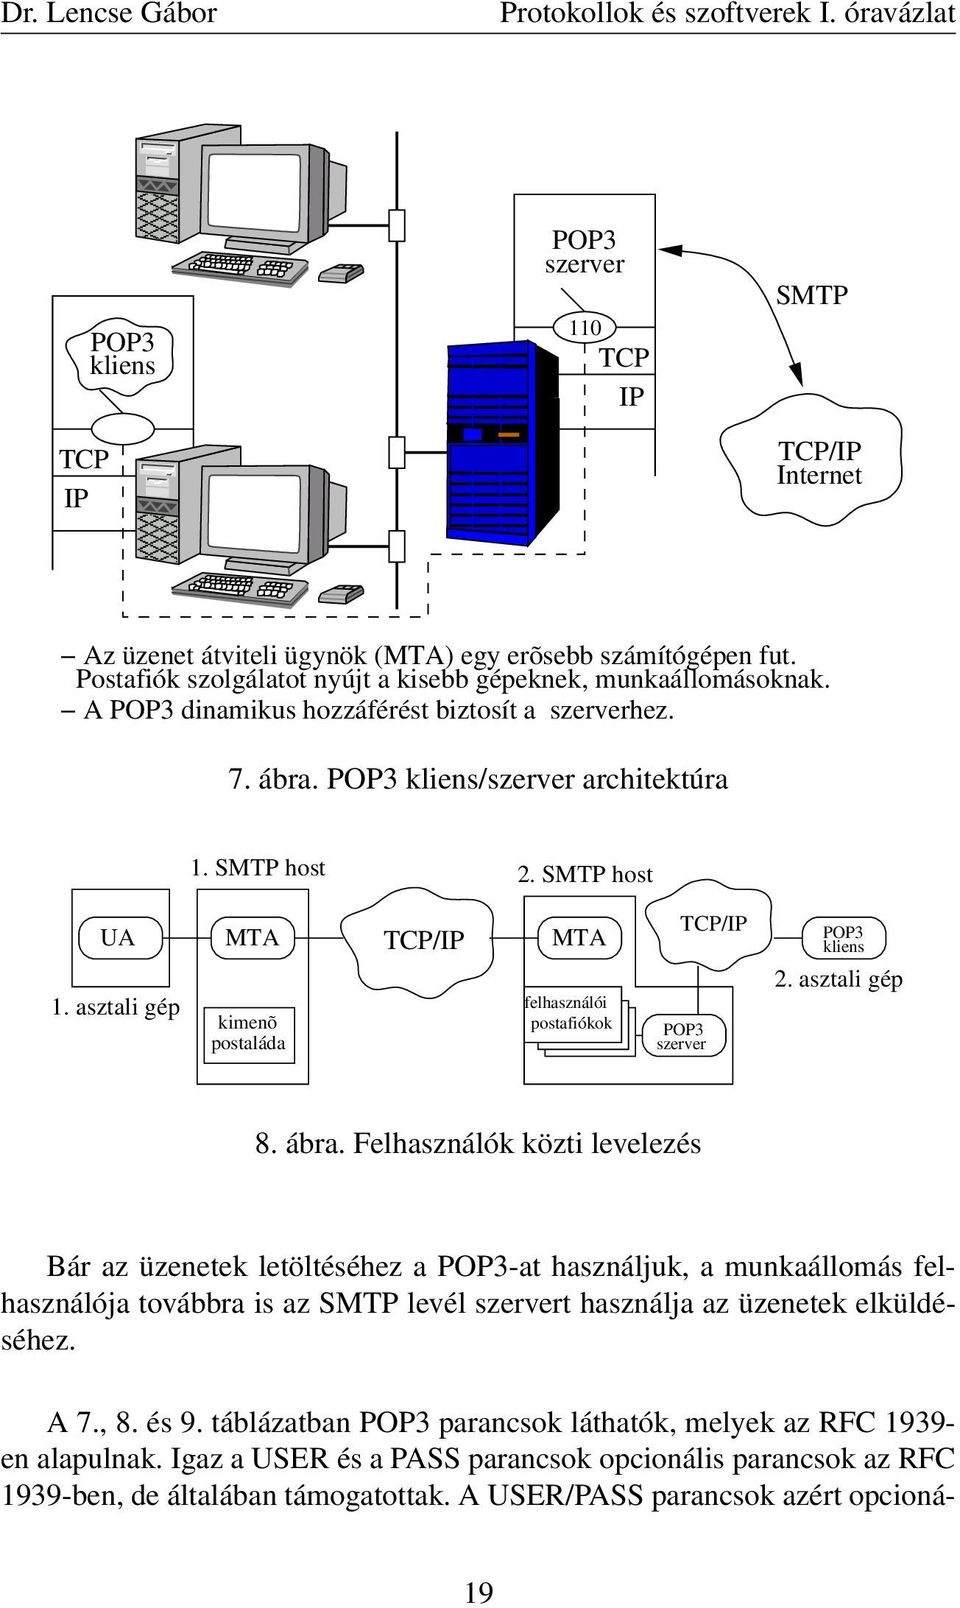 fut. Postafiók szolgálatot nyújt a kisebb gépeknek, munkaállomásoknak. A POP3 dinamikus hozzáférést biztosít a szerverhez. 7. ábra. POP3 kliens/szerver architektúra 1. SMTP host 2. SMTP host UA 1.